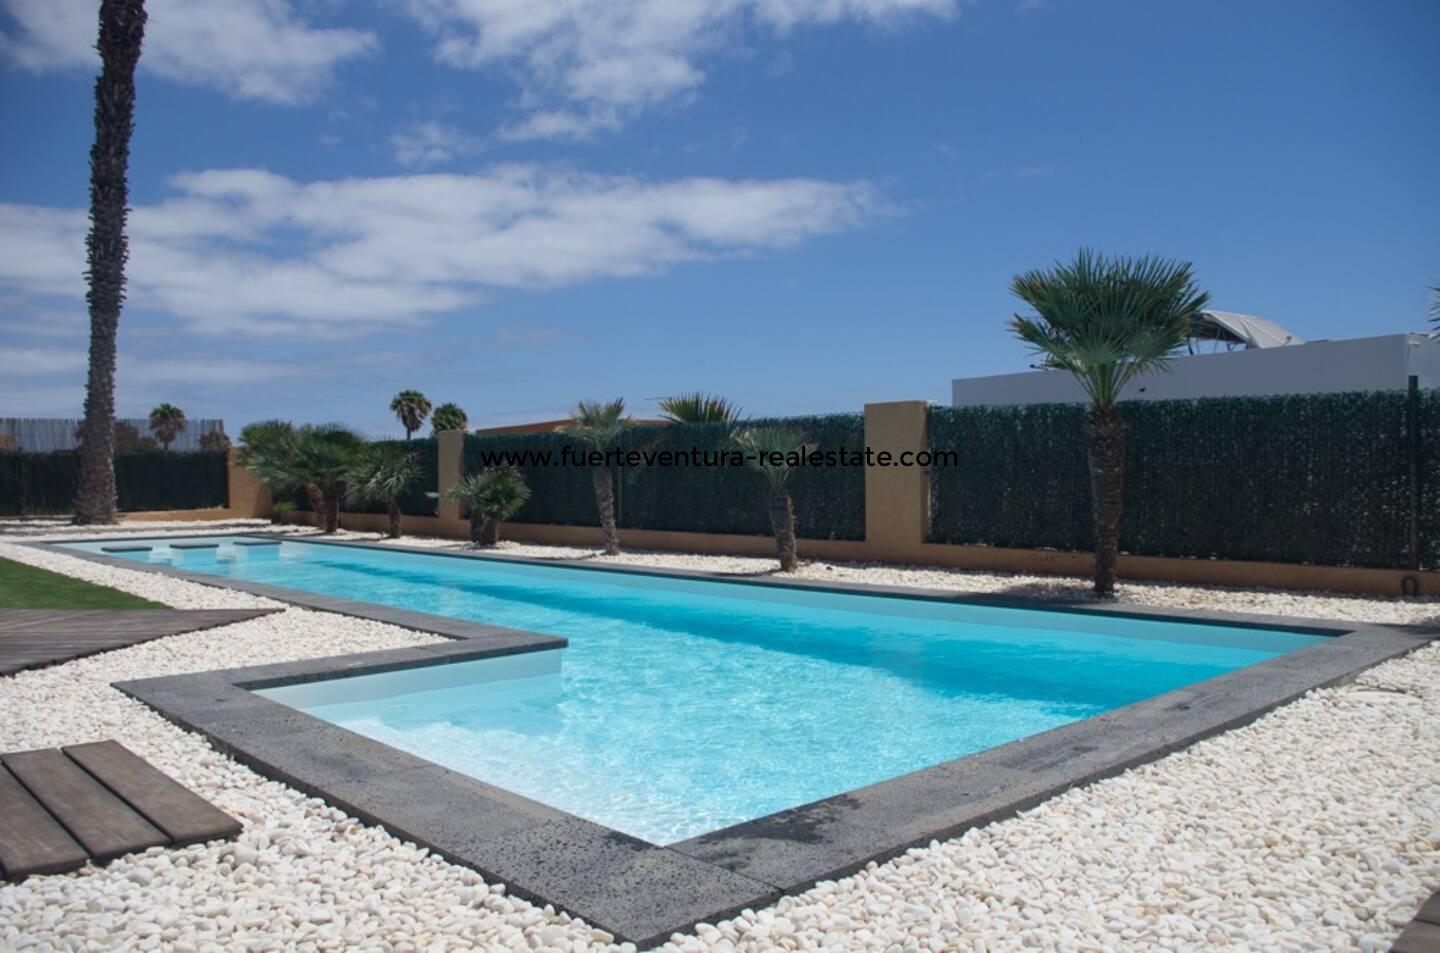 Einmalige Villa mit Pool am Golf Las Salinas in Caleta de Fuste